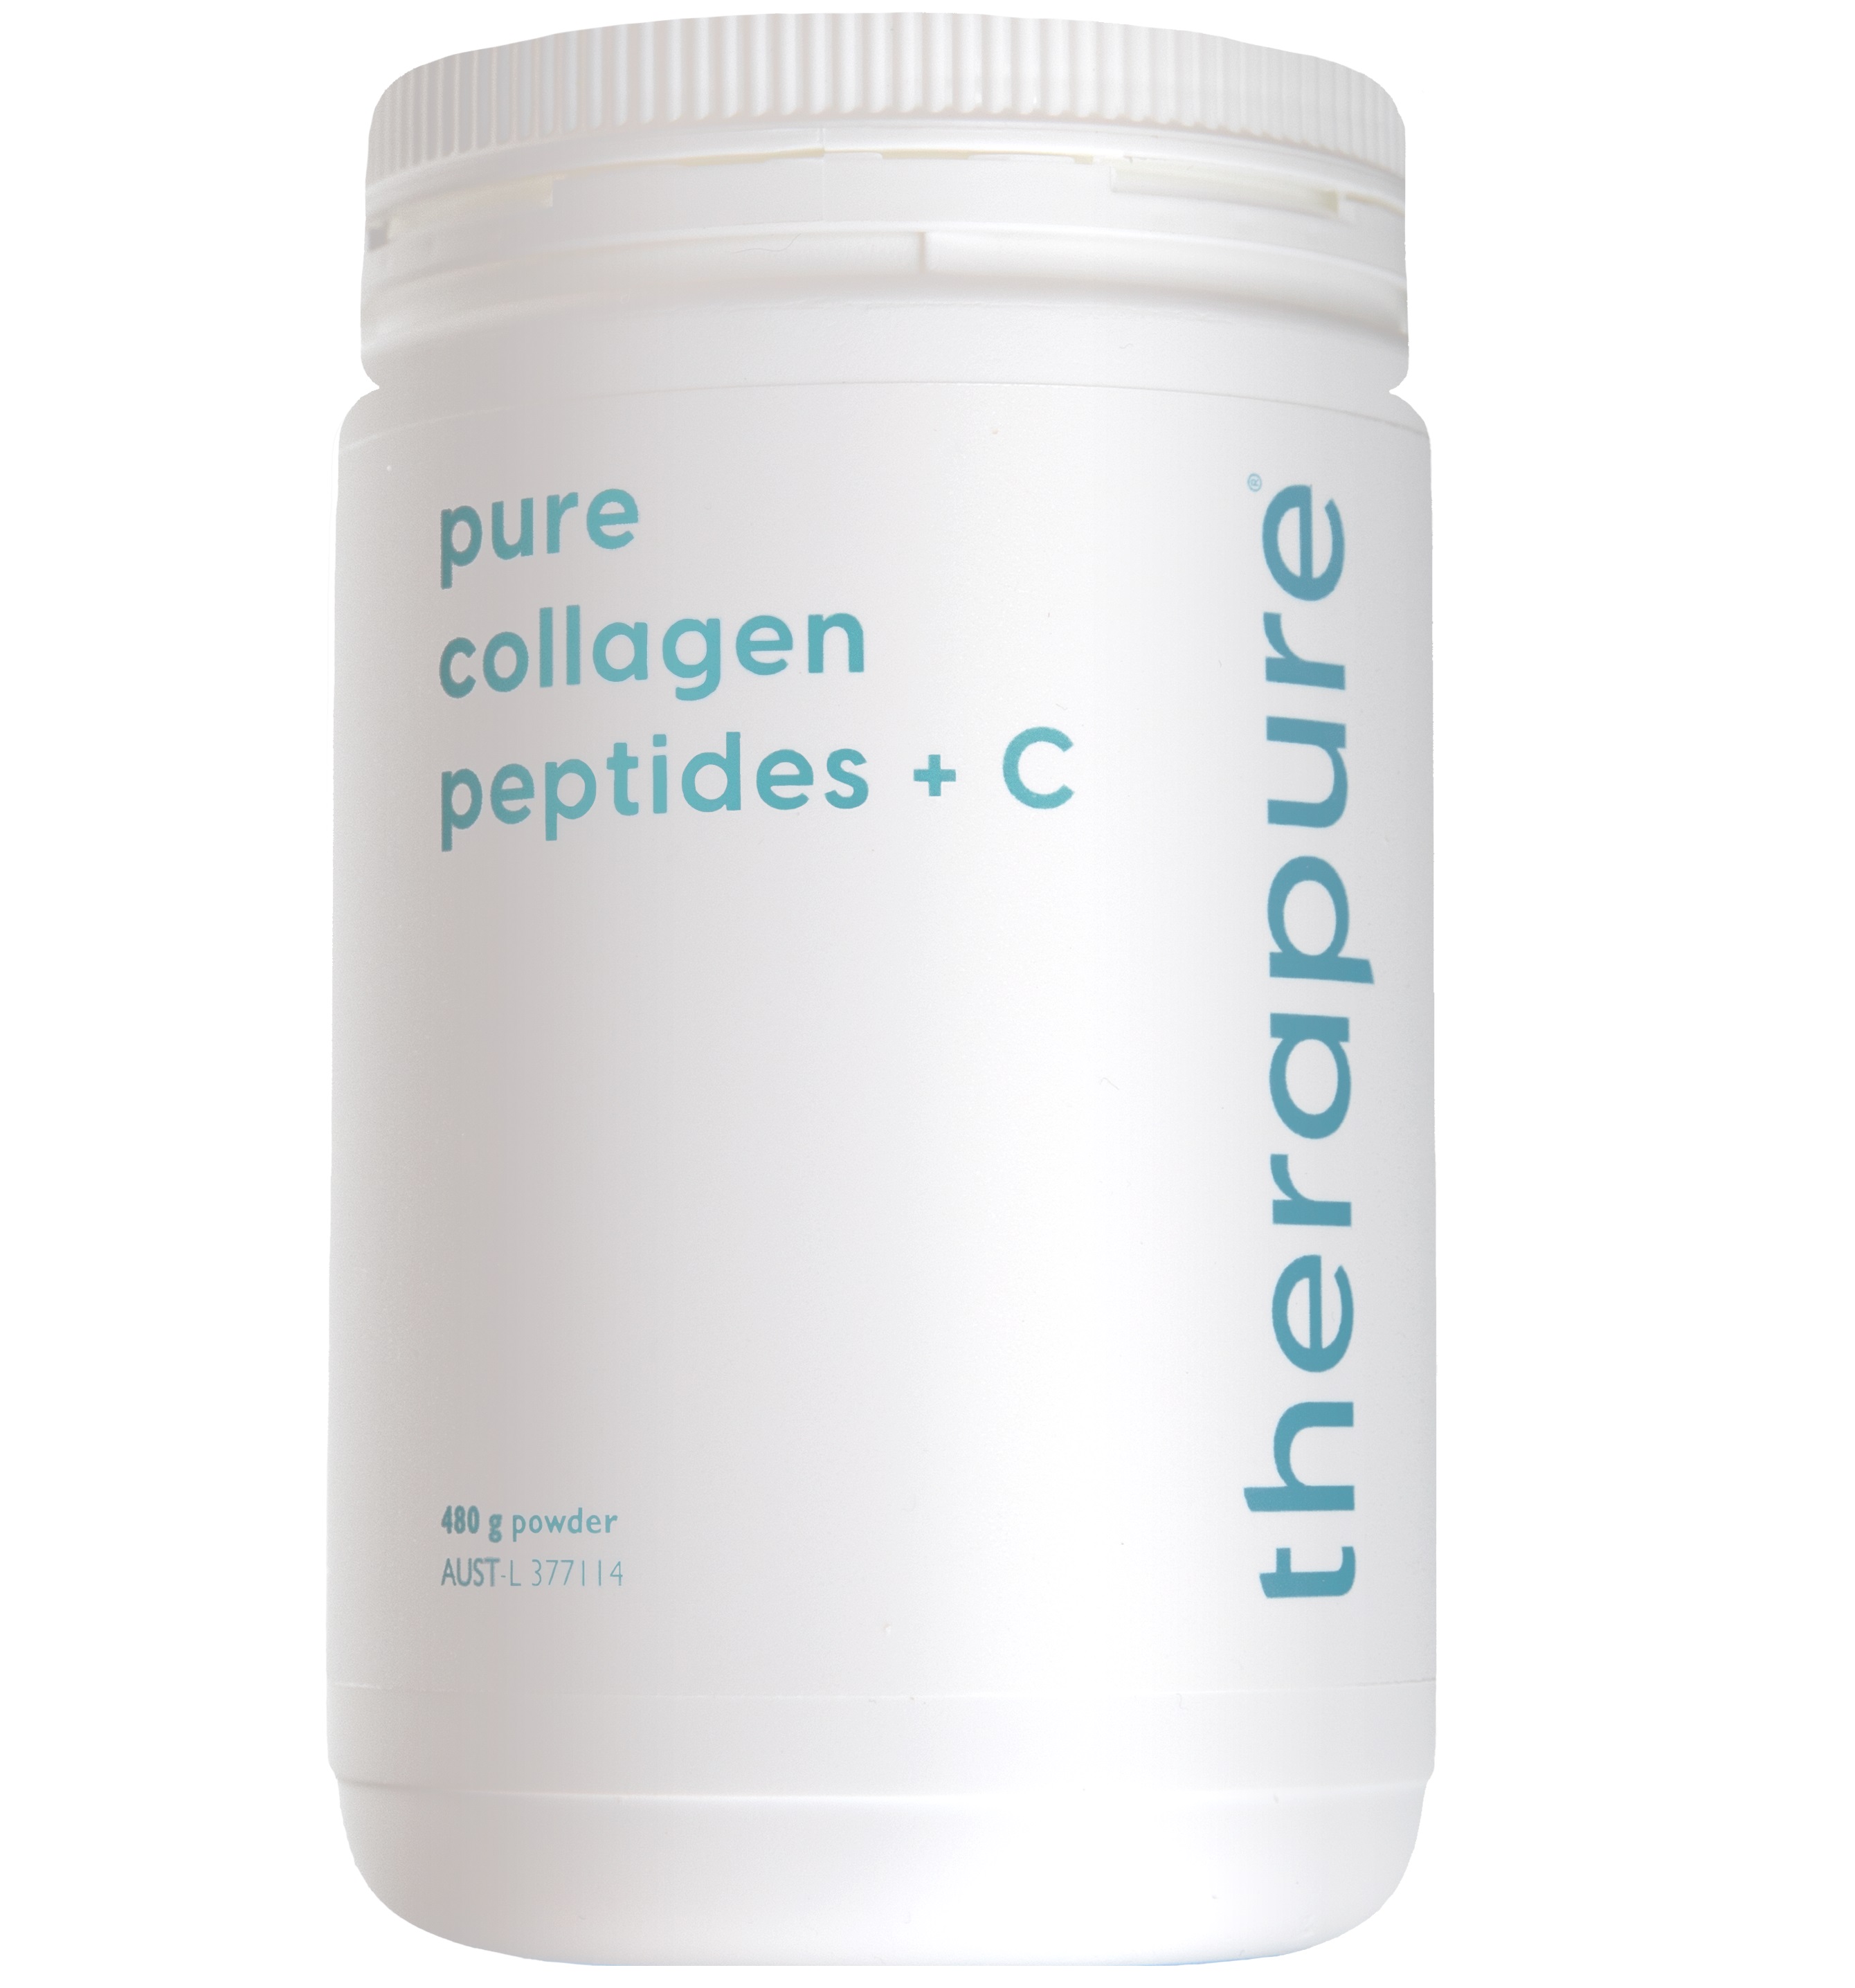 Therapure - Pure Collagen Peptides + C